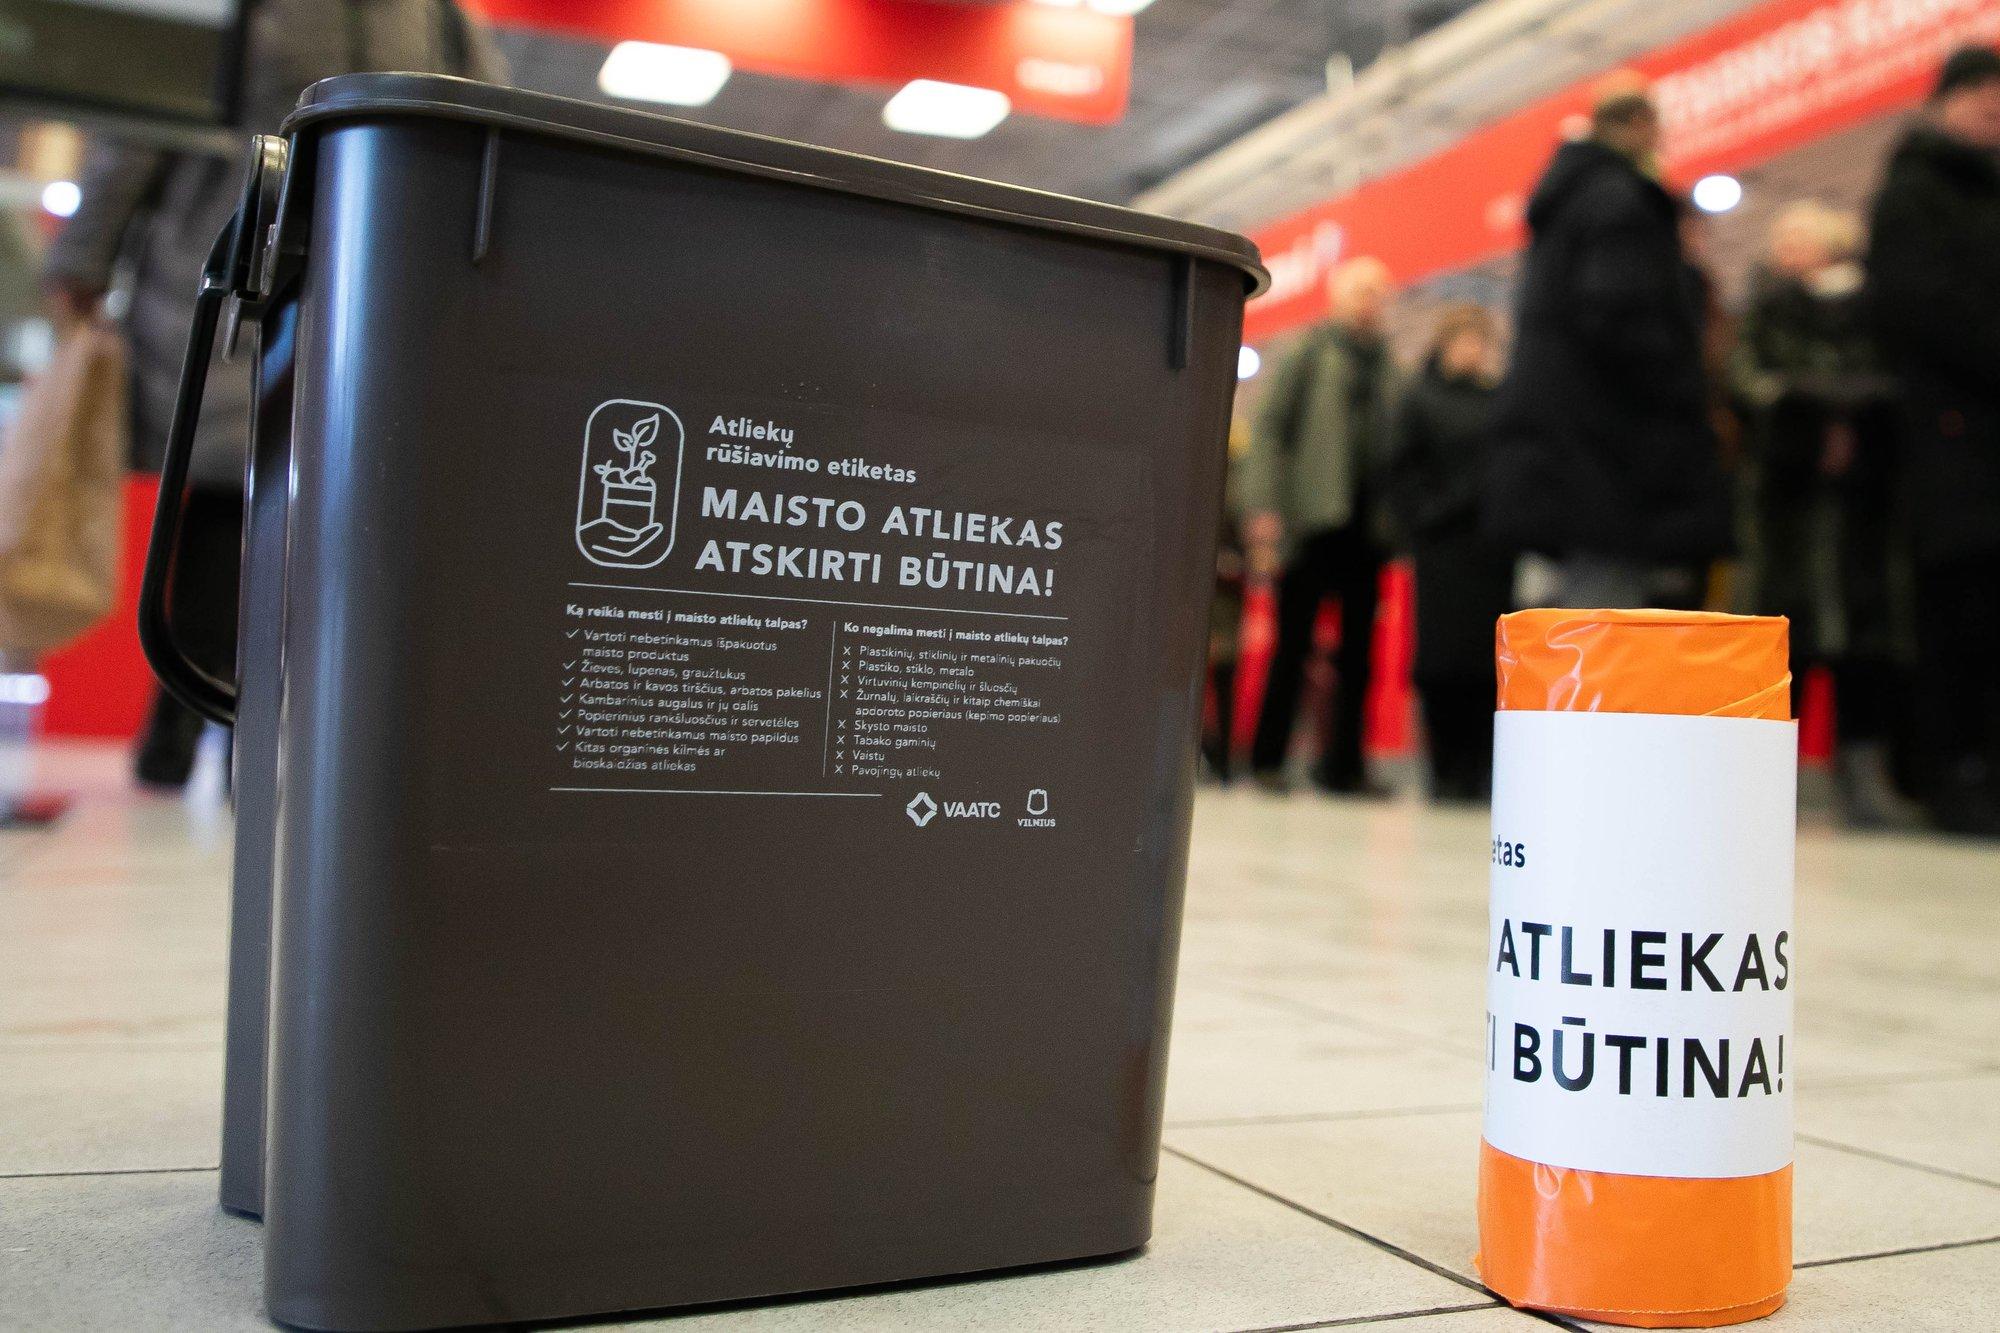 Pasižvalgykime po Lietuvos miestus - kada rūšiuoti maisto atliekas galės visi?